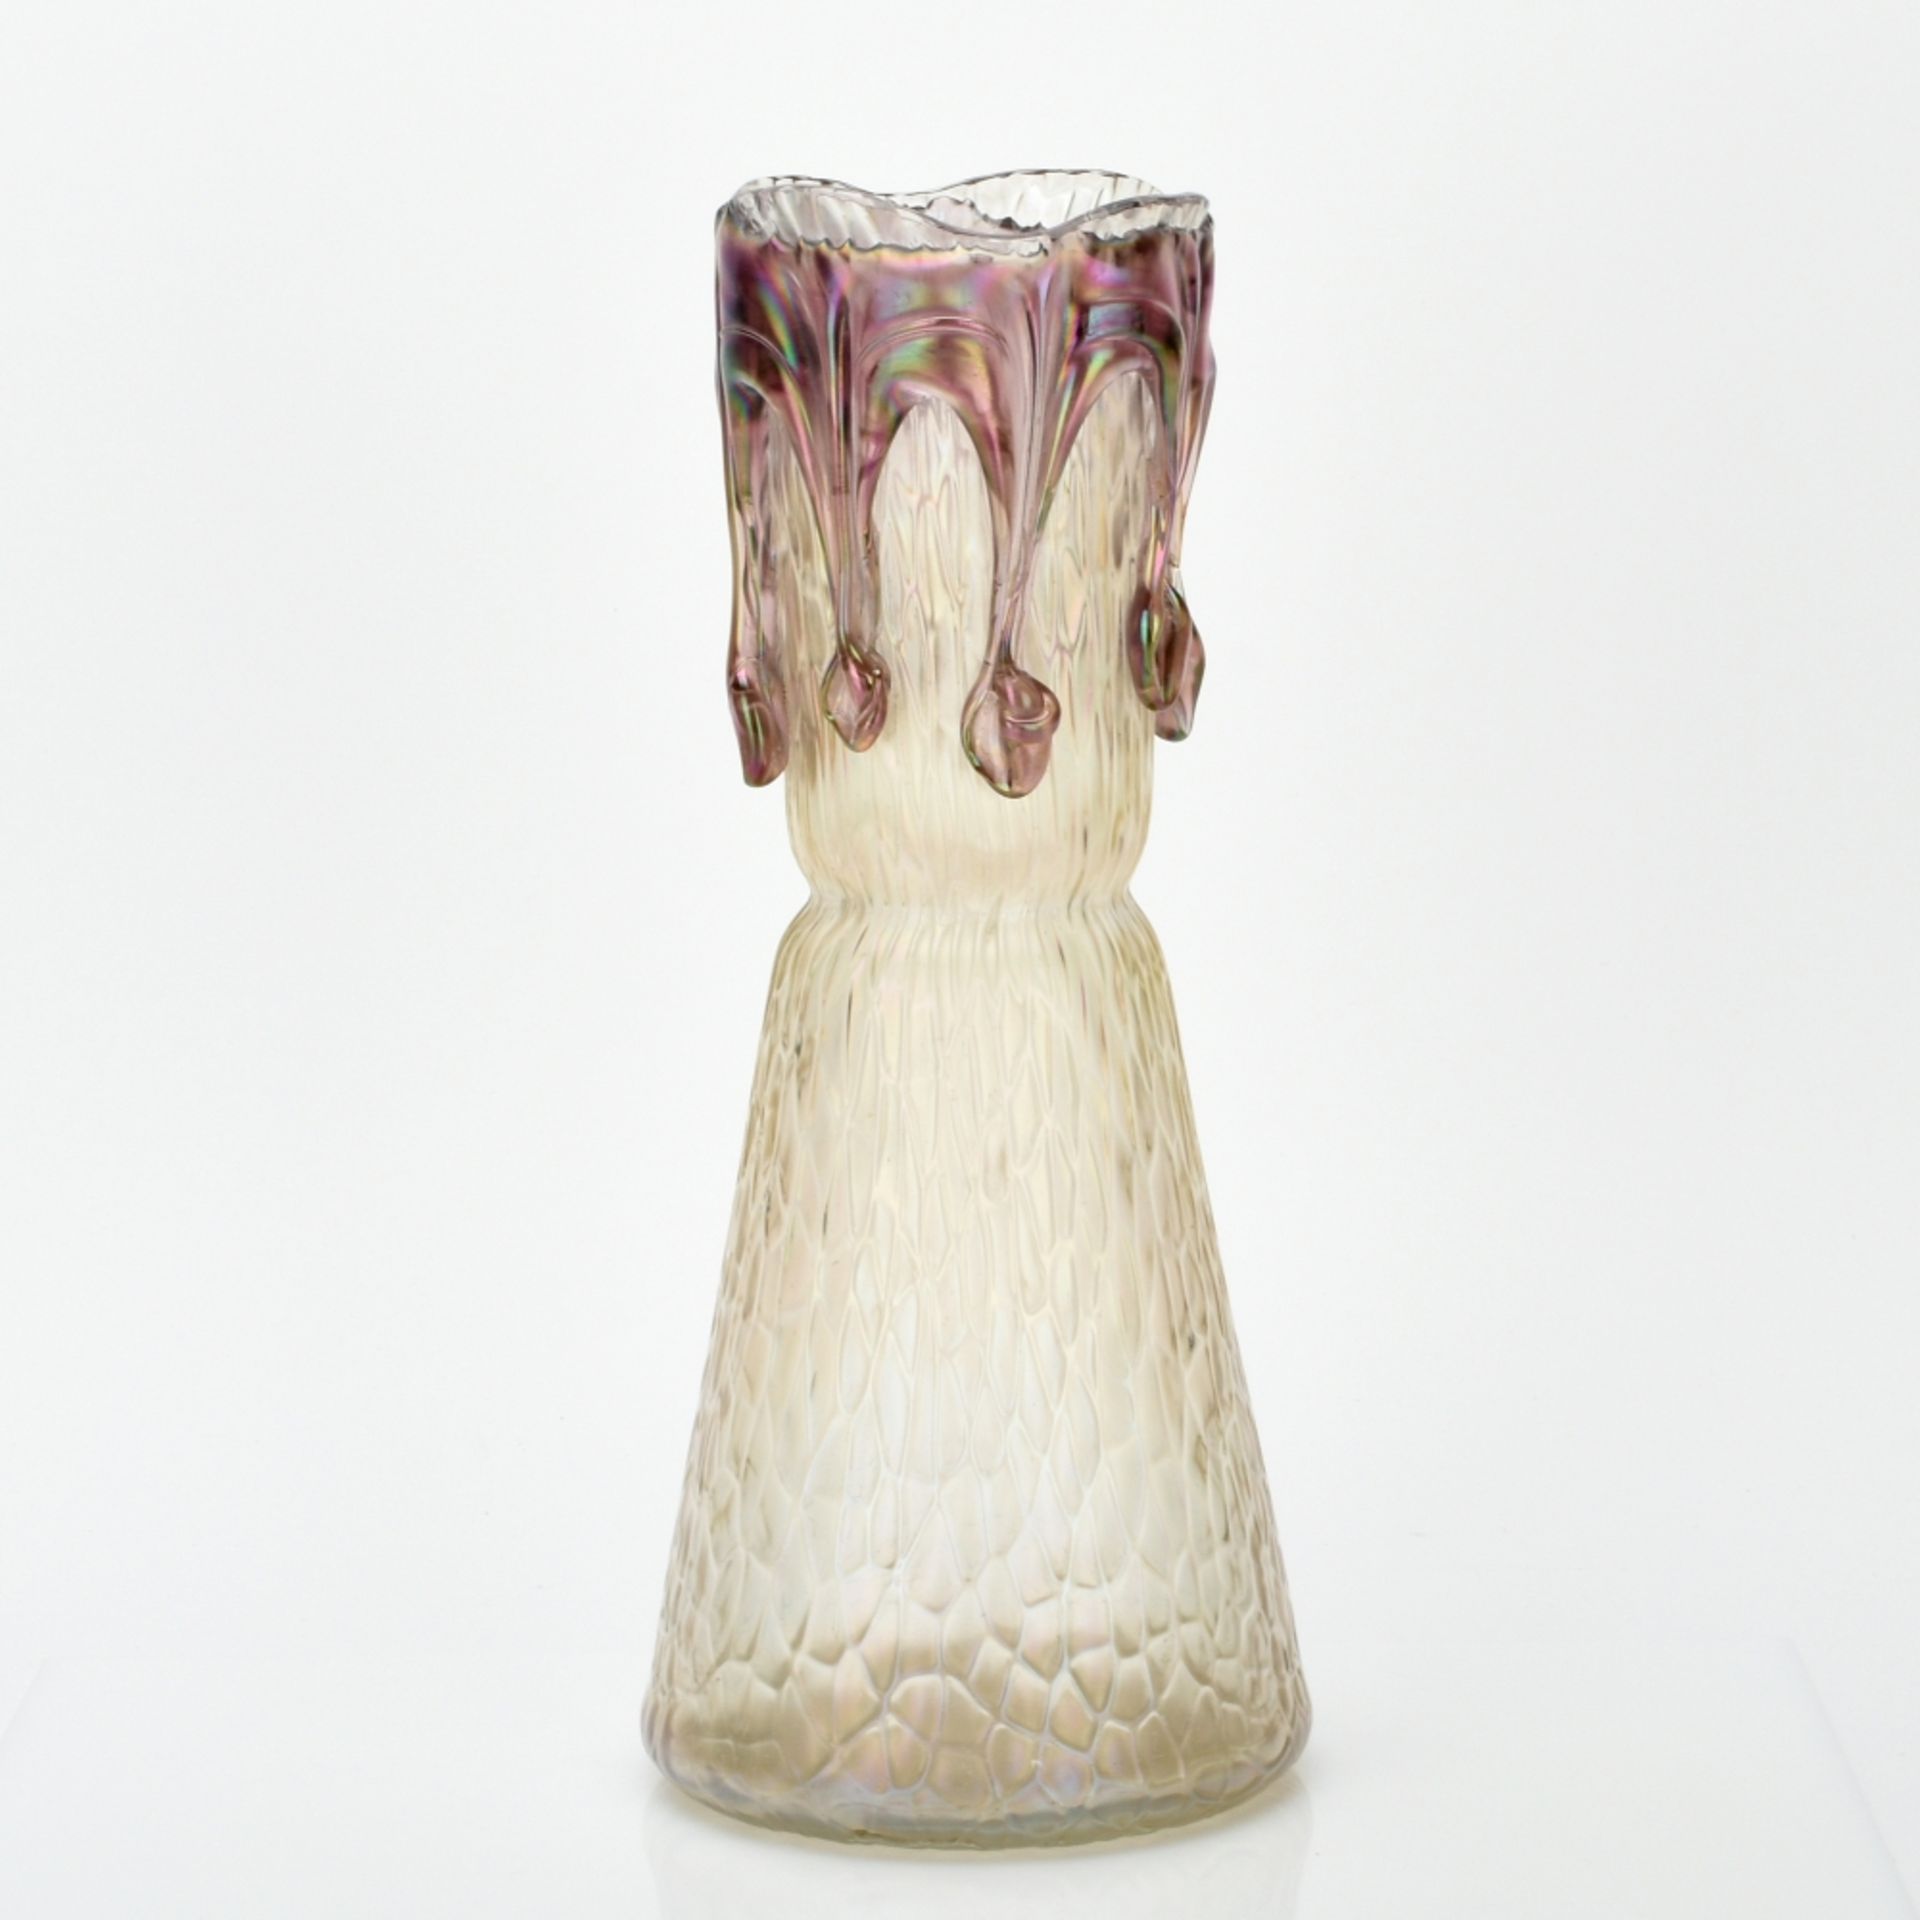 Jugendstil-Vase